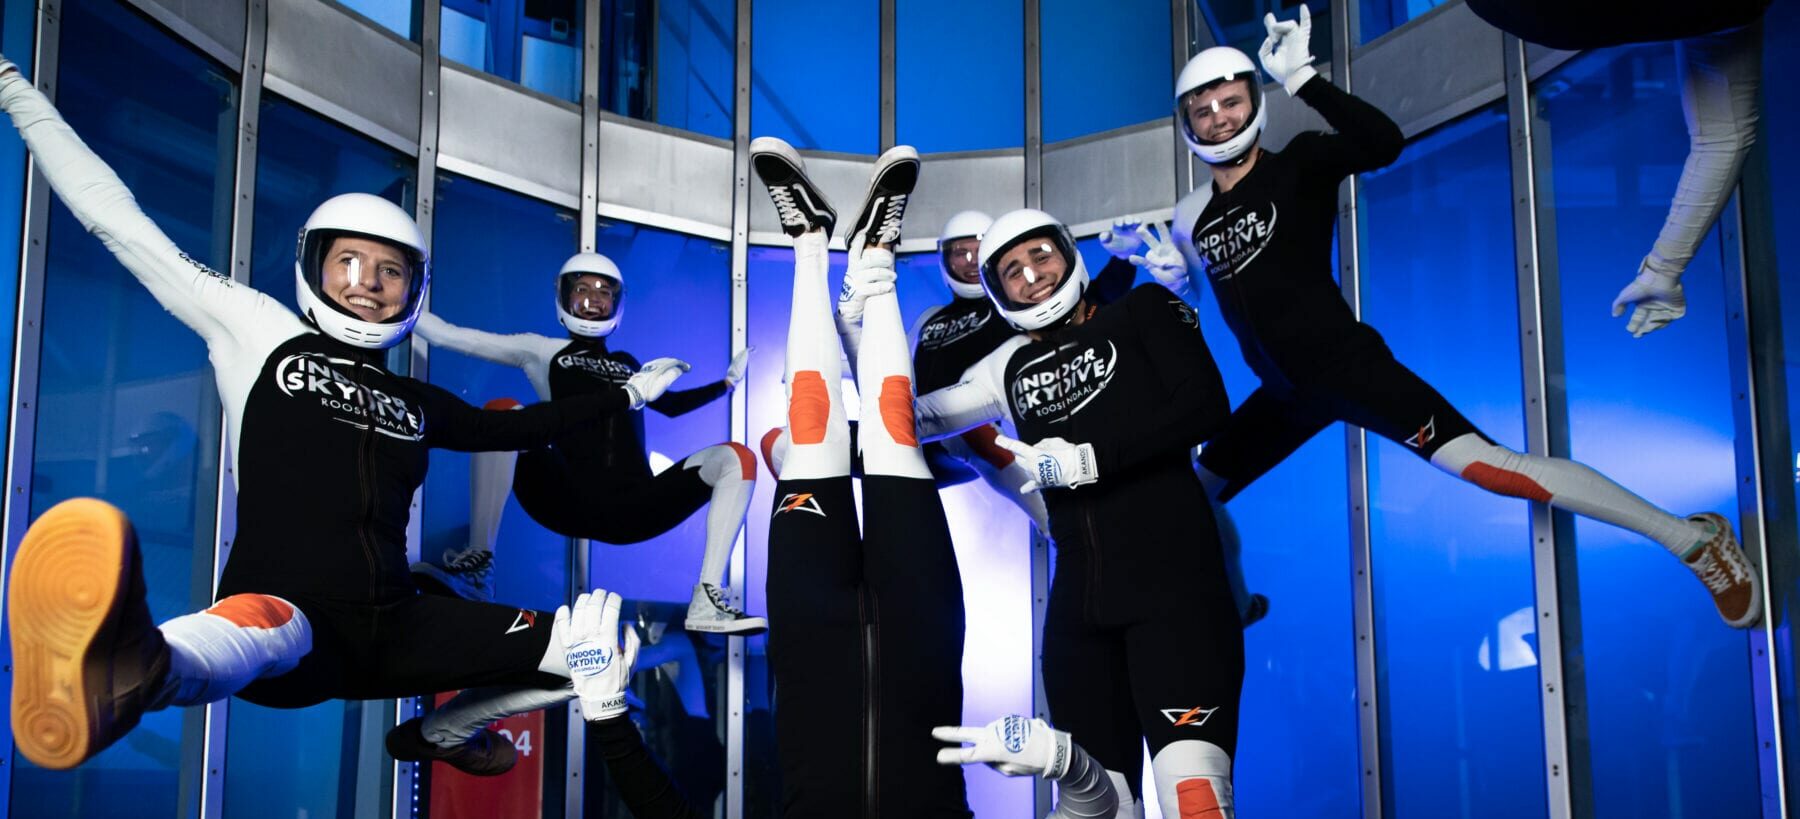 Hoe trainen instructeurs van Indoor Skydive Roosendaal de eigen vaardigheden?